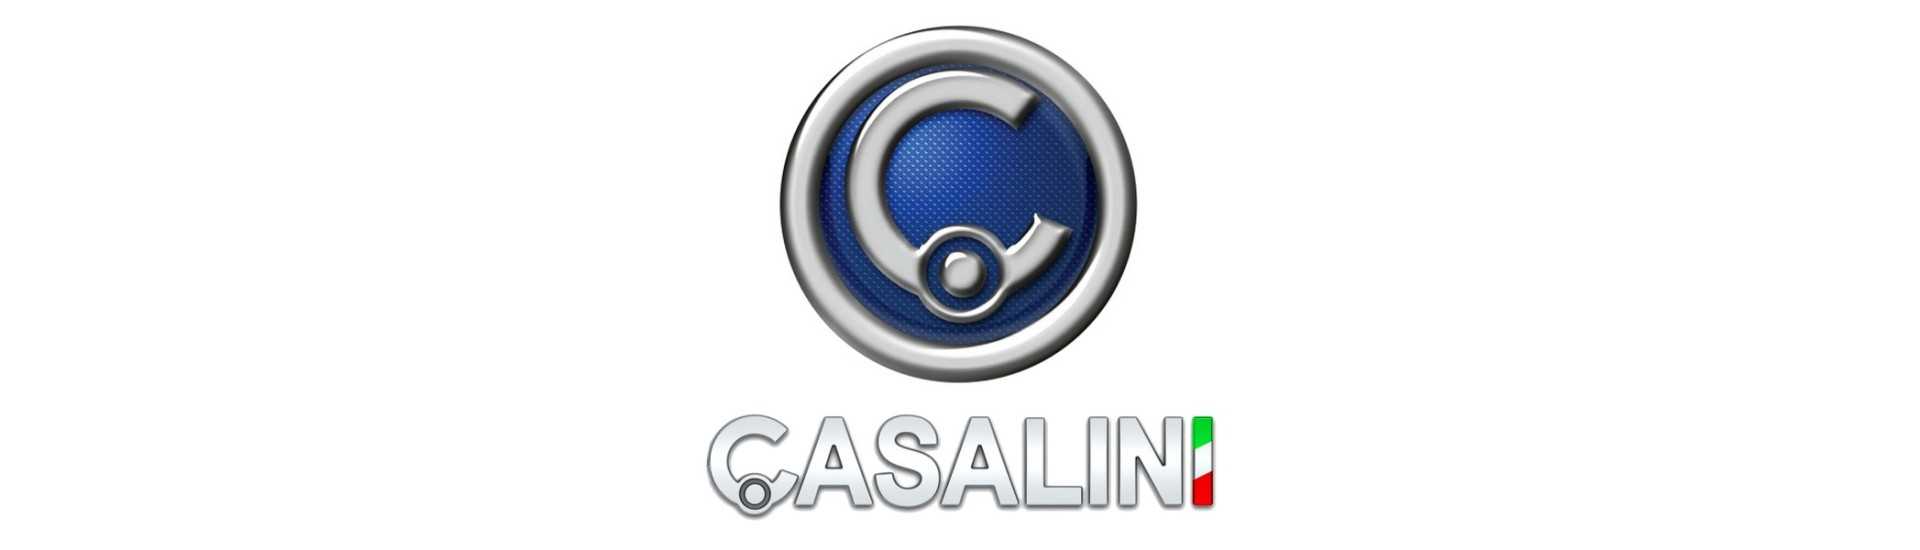 Luz de placa ao melhor preço para o carro sem uma permissão Casalini